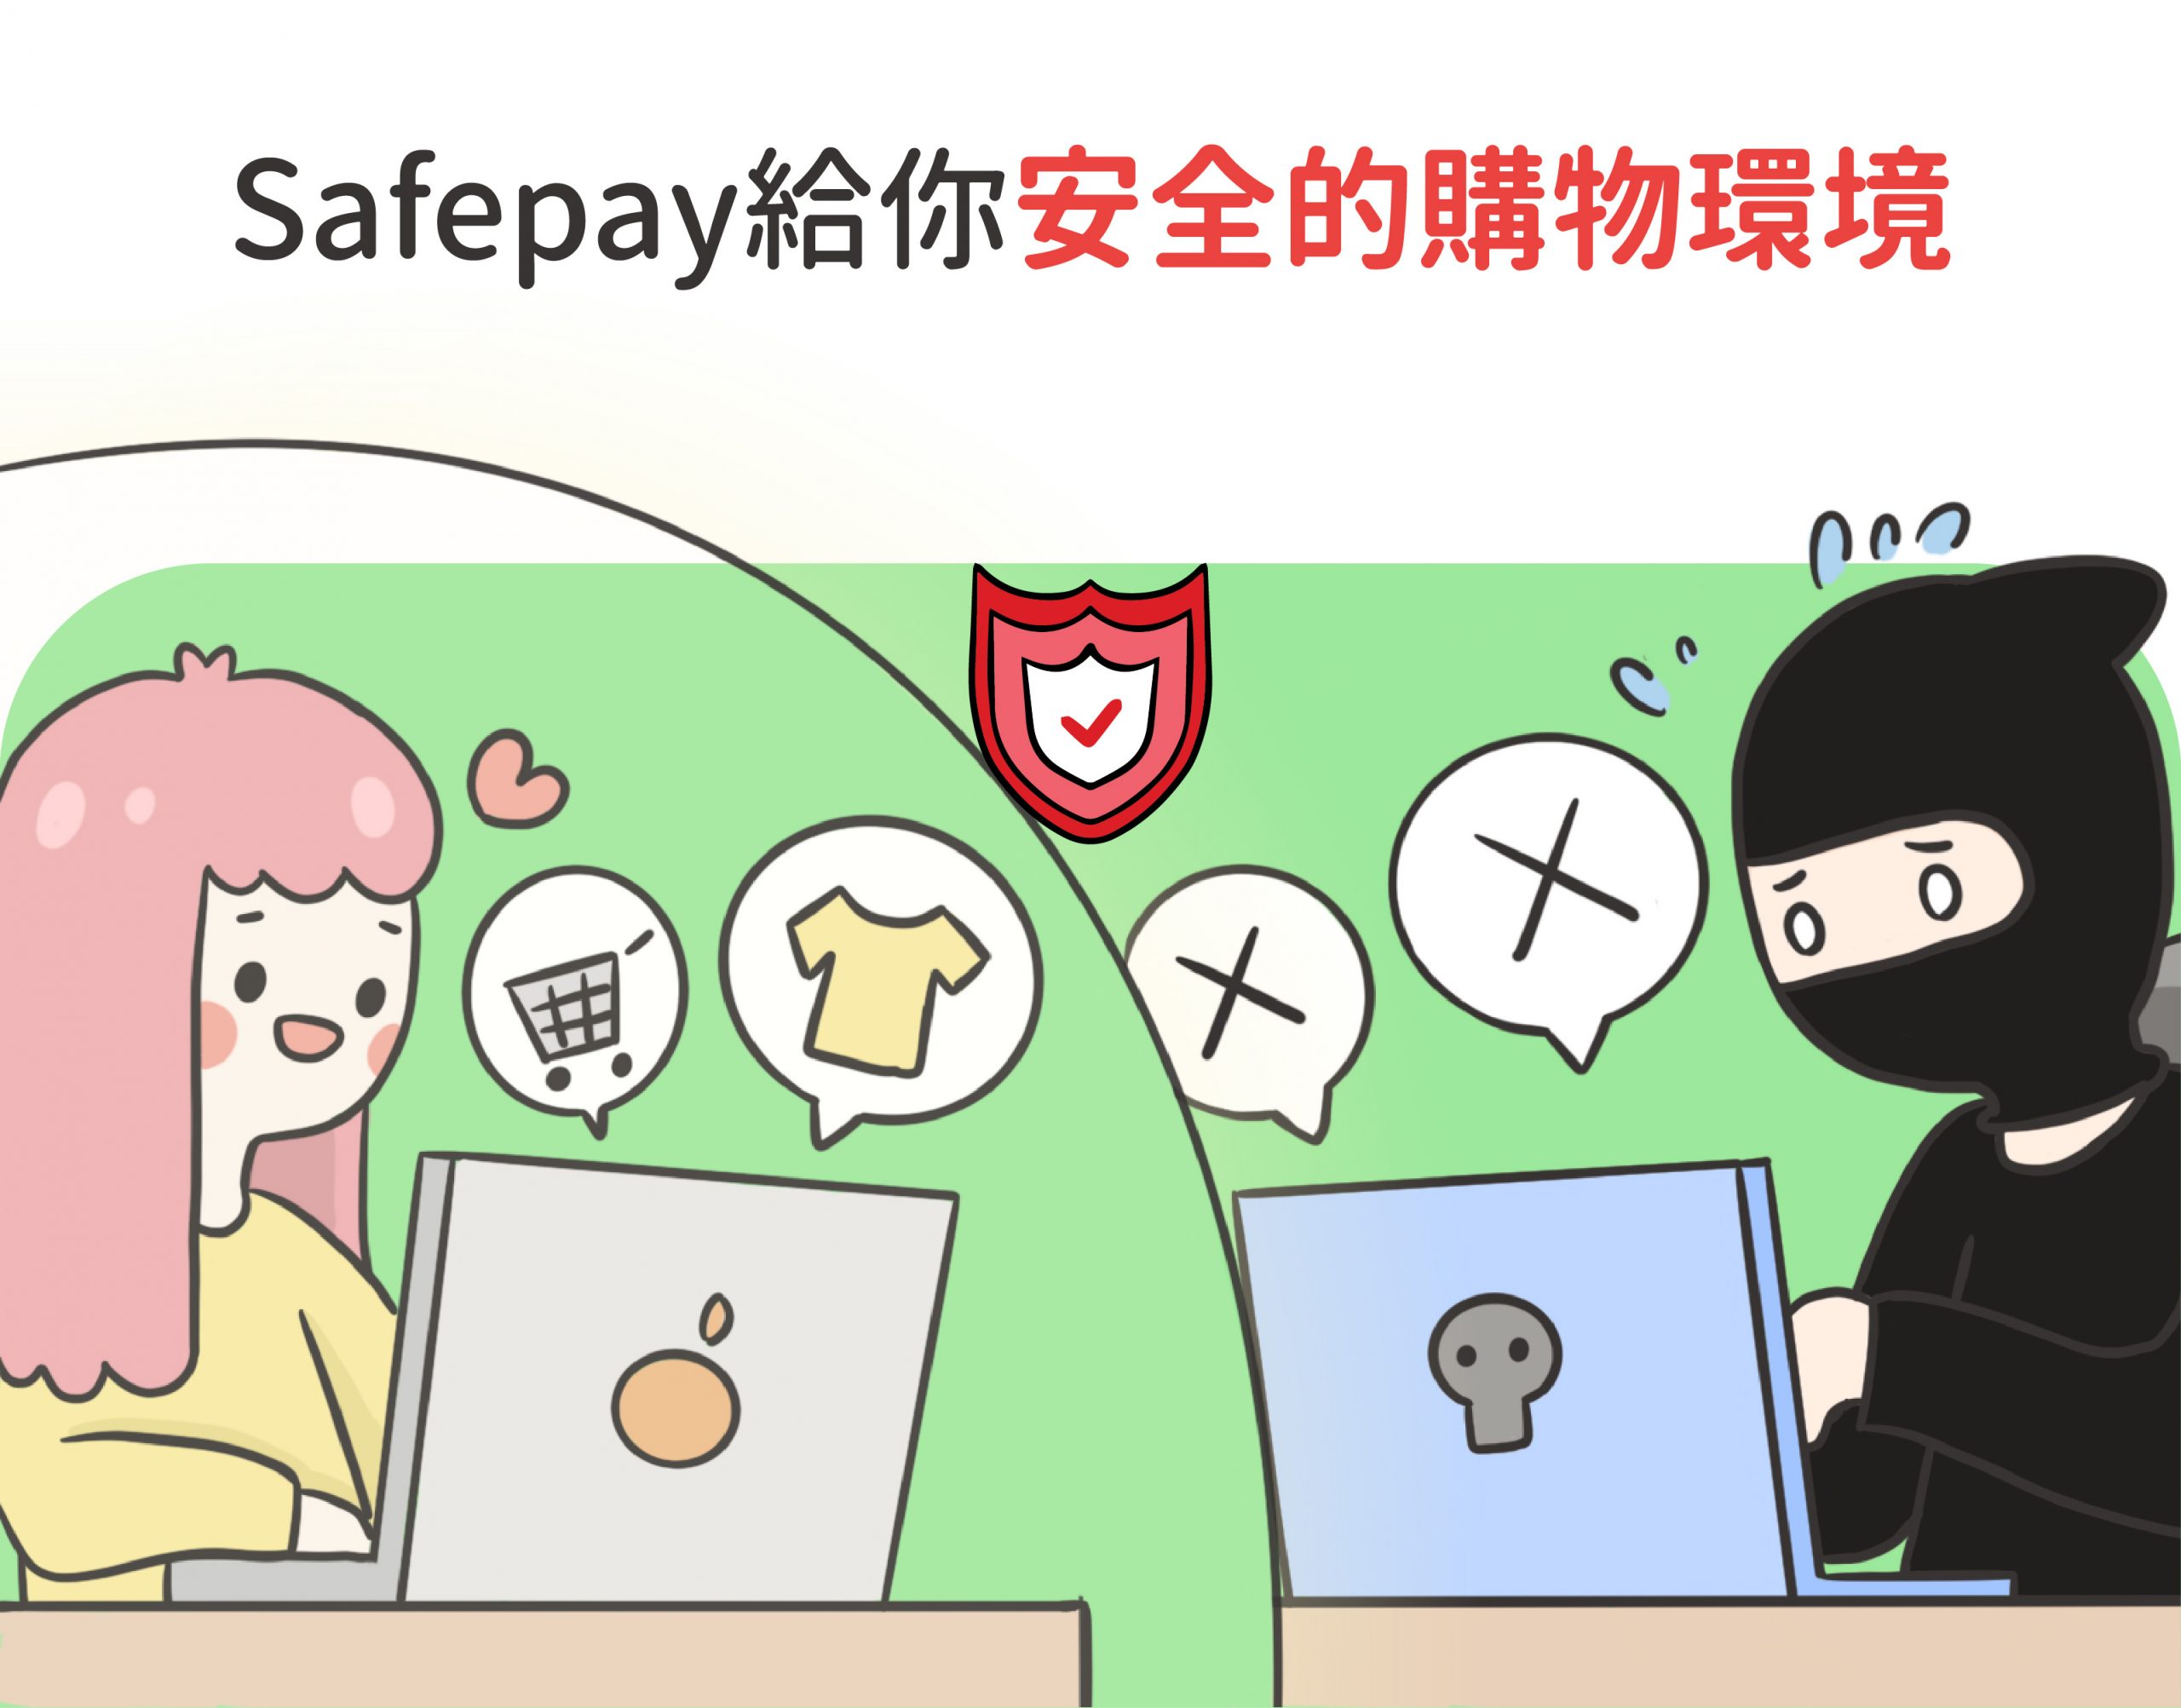 Safepay給你安全的購物環境